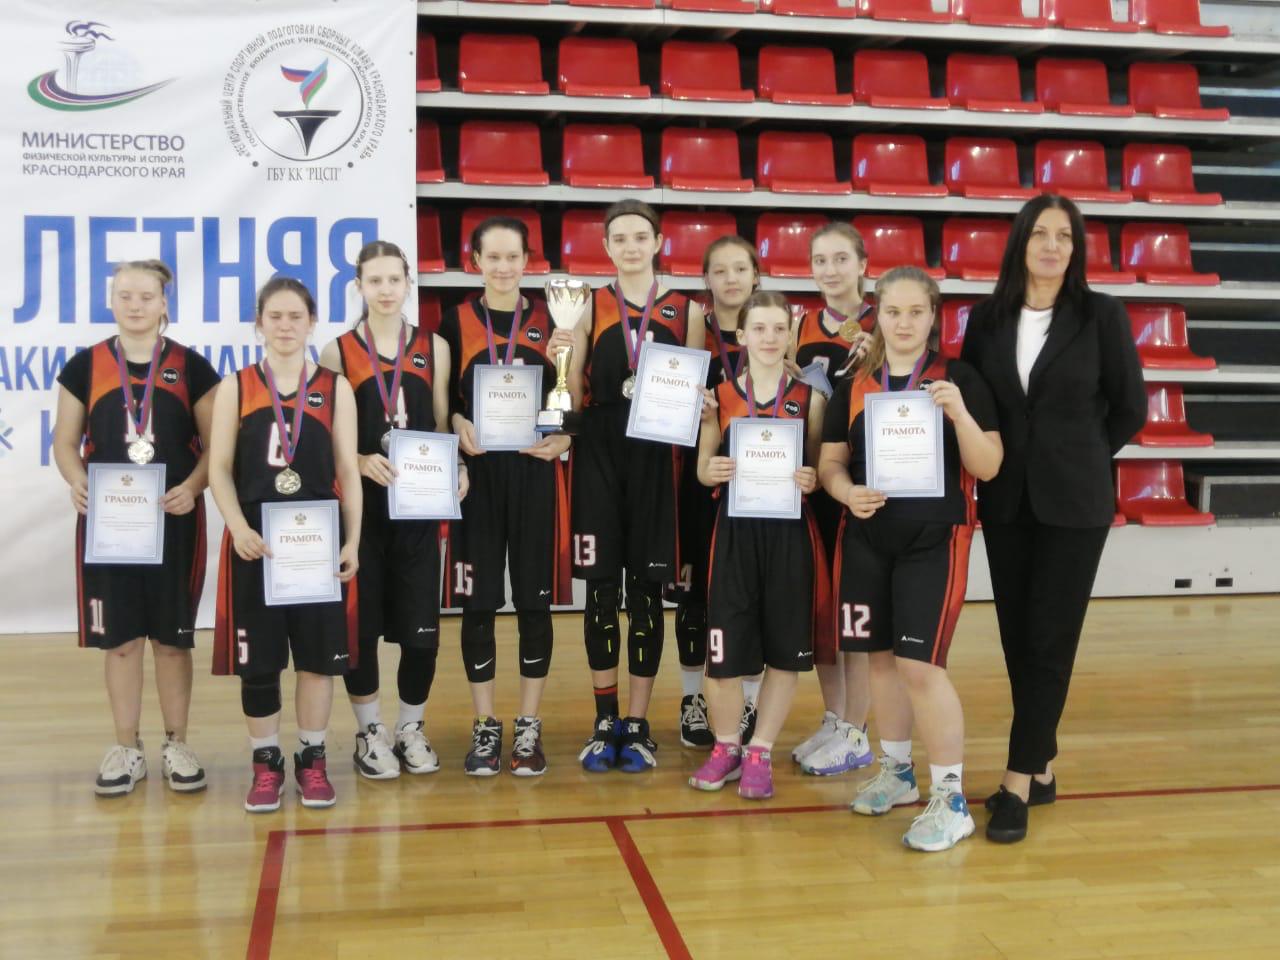 Завершилась 12 летняя спартакиада учащихся Кубани по баскетболу среди девушек до 16 лет